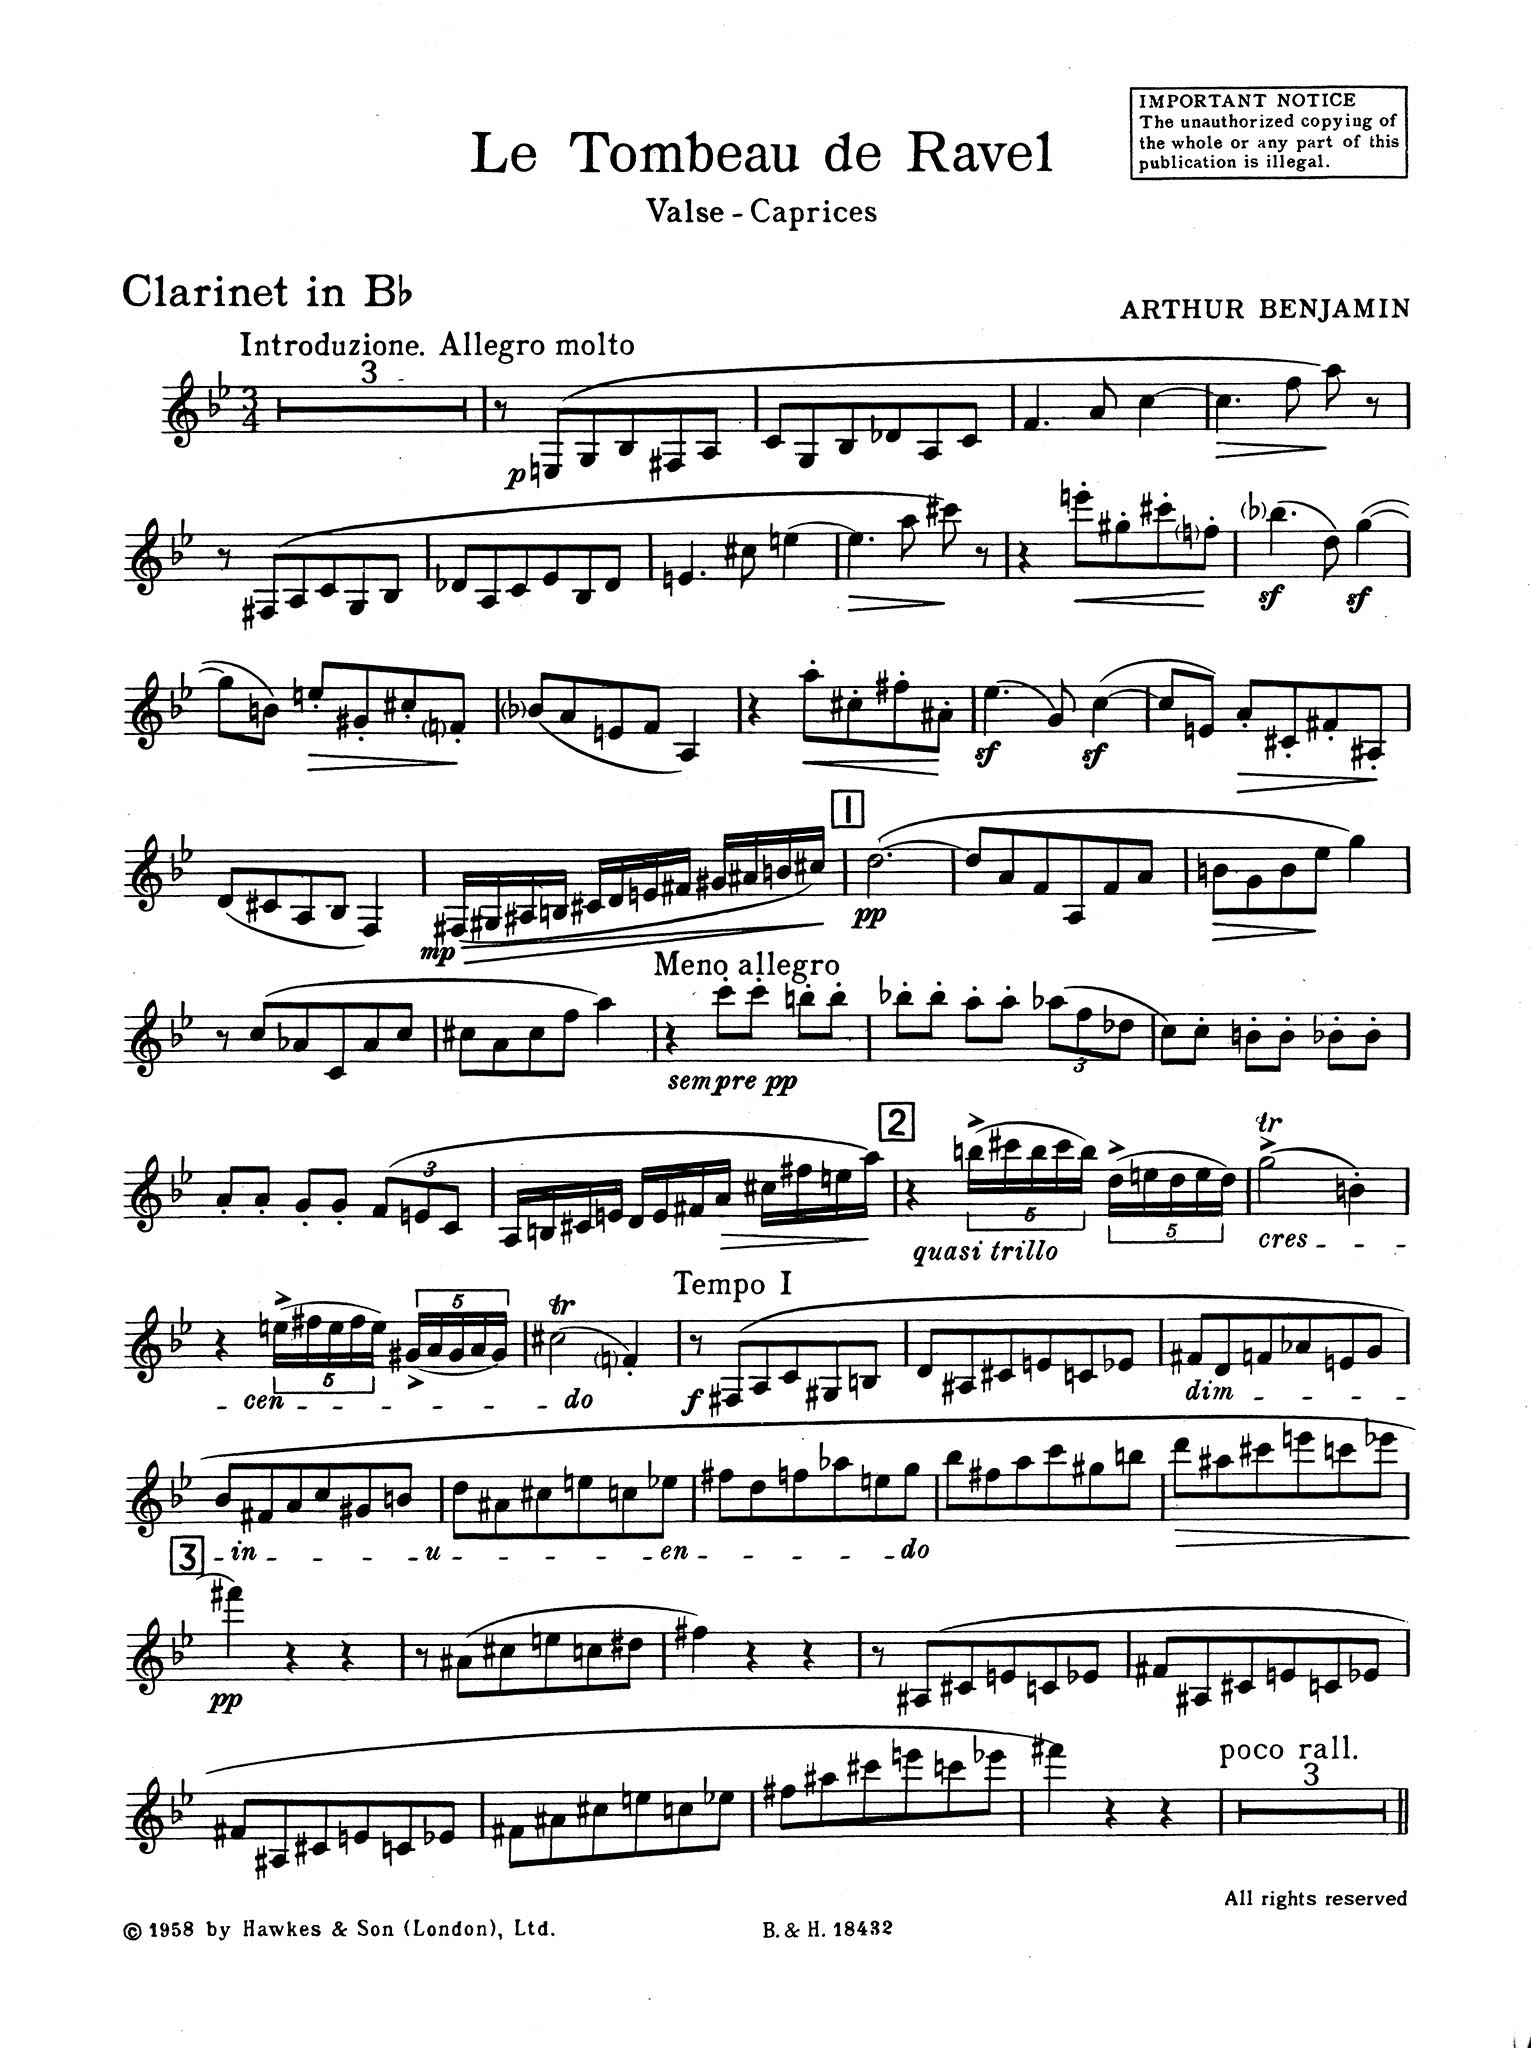 Le Tombeau de Ravel: Valse-Caprices Clarinet part